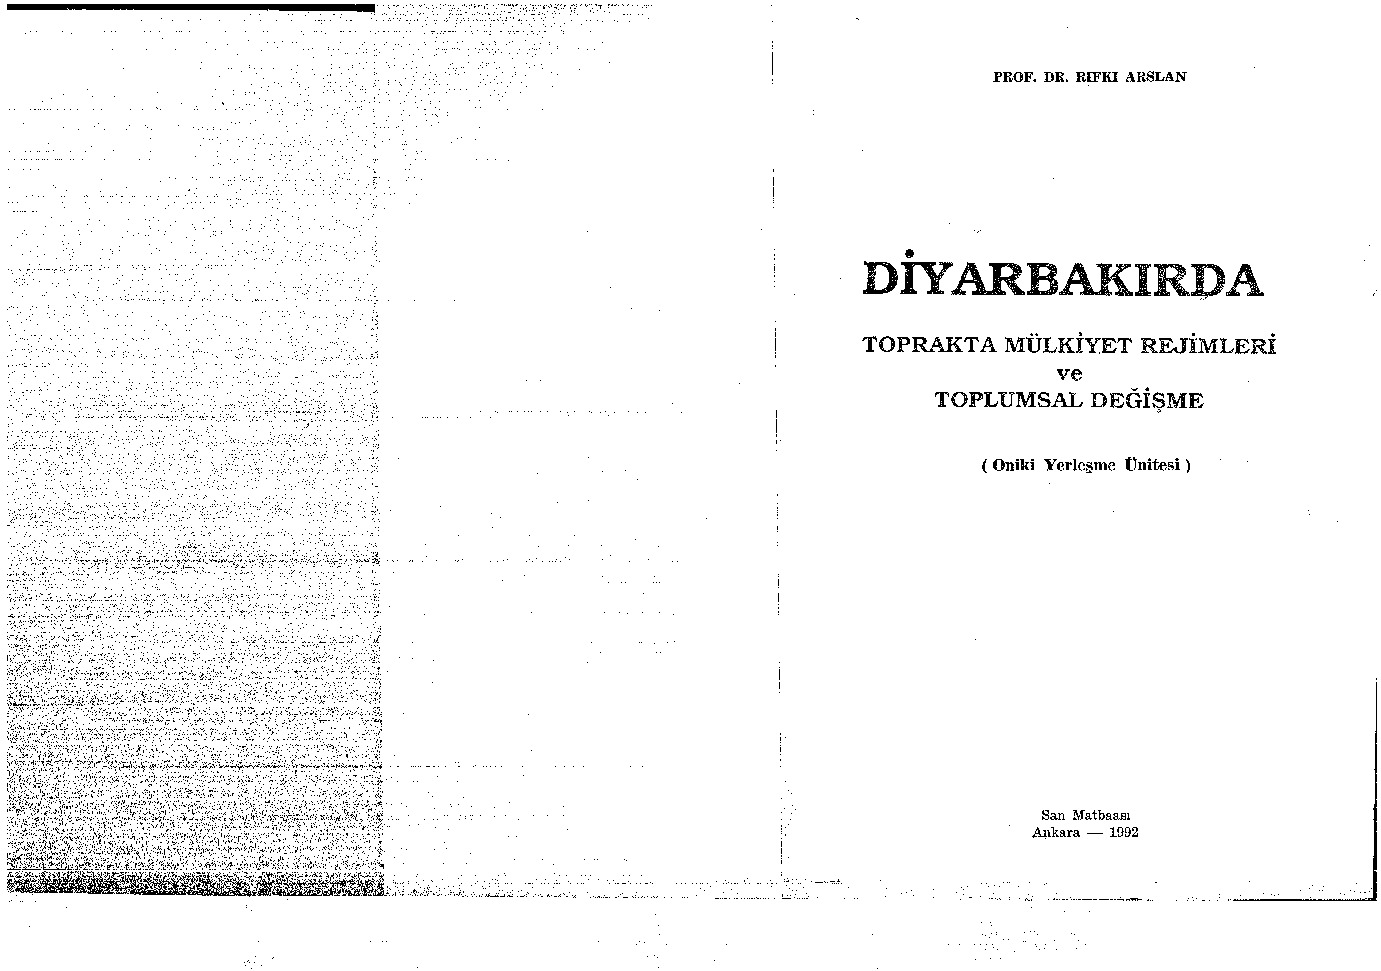 Diyarbakırda-Topraqda Mülkiyet Rejimleri Ve Toplumsal Değişme-Rıfqı Arslan-1992-257s